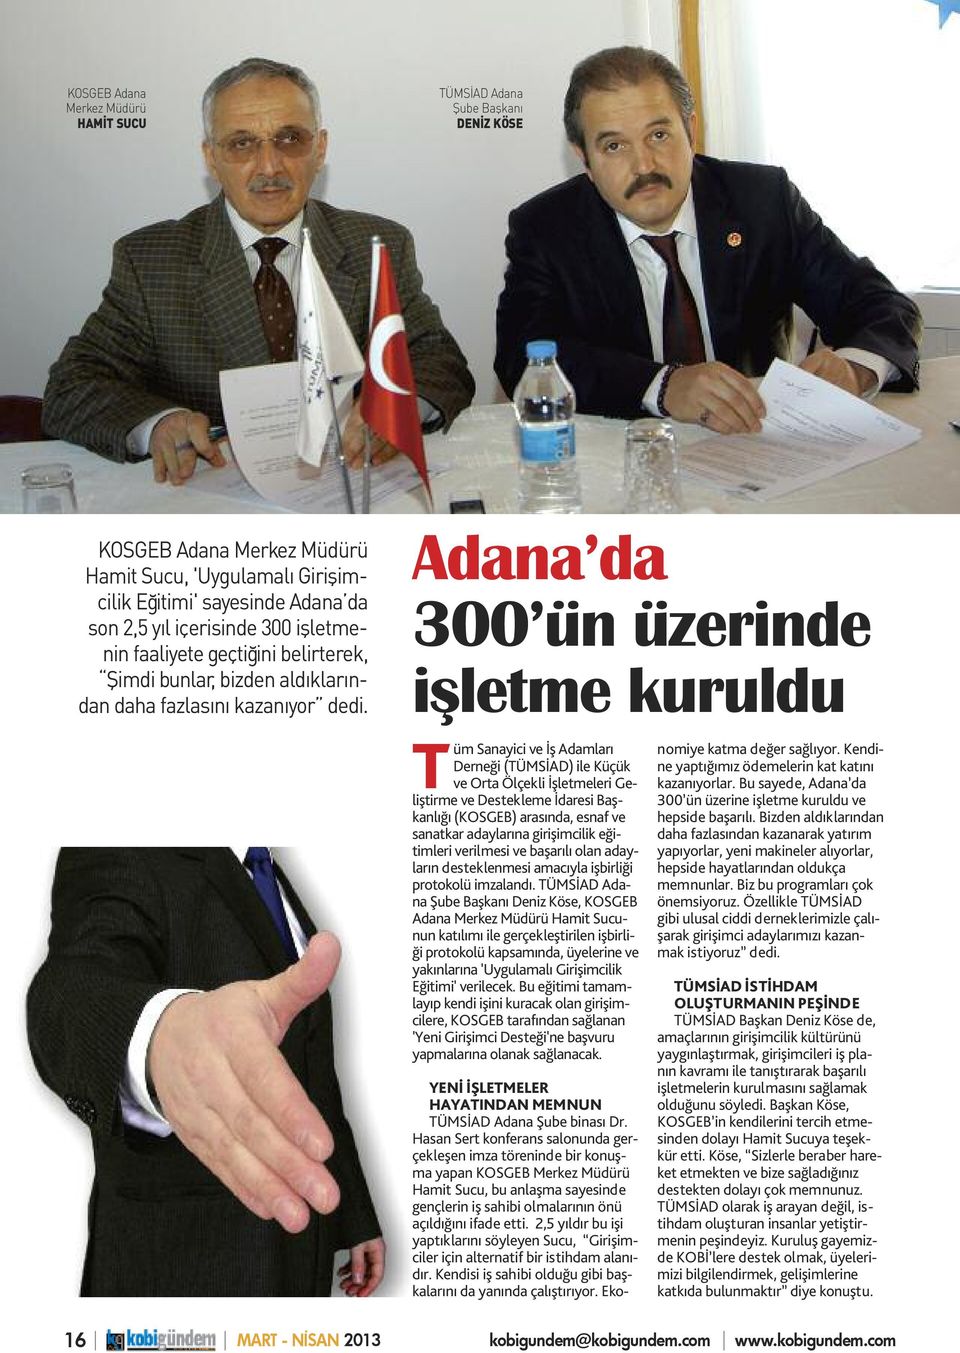 Adana da 300 ün üzerinde işletme kuruldu Tüm Sanayici ve İş Adamları Derneği (TÜMSİAD) ile Küçük ve Orta Ölçekli İşletmeleri Geliştirme ve Destekleme İdaresi Başkanlığı (KOSGEB) arasında, esnaf ve